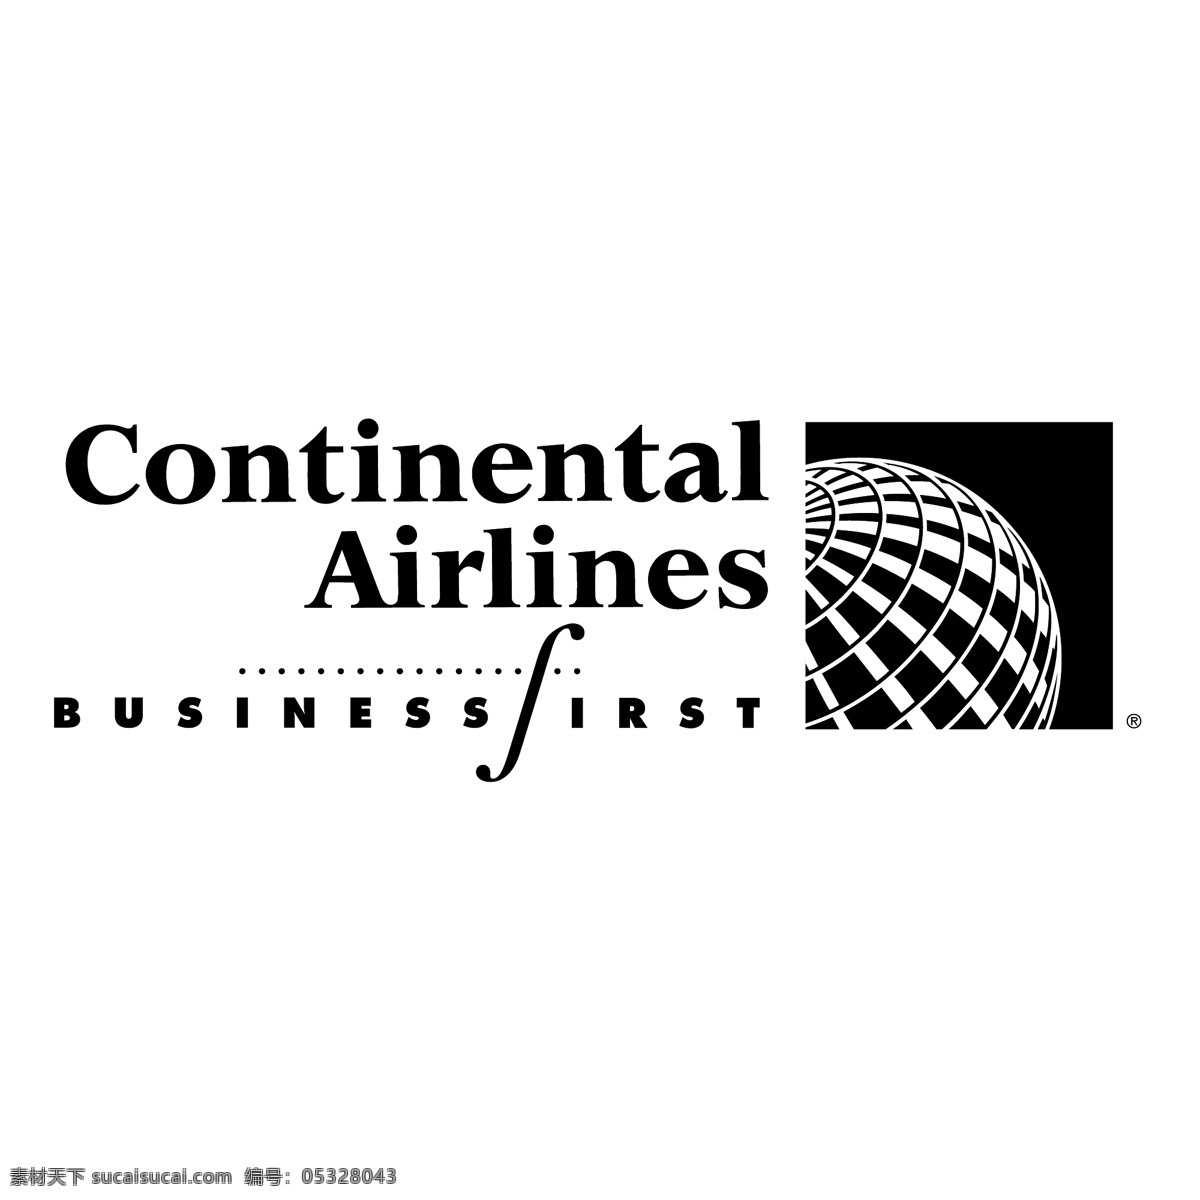 大陆航空公司 商务 头等舱 免费 标志 psd源文件 logo设计